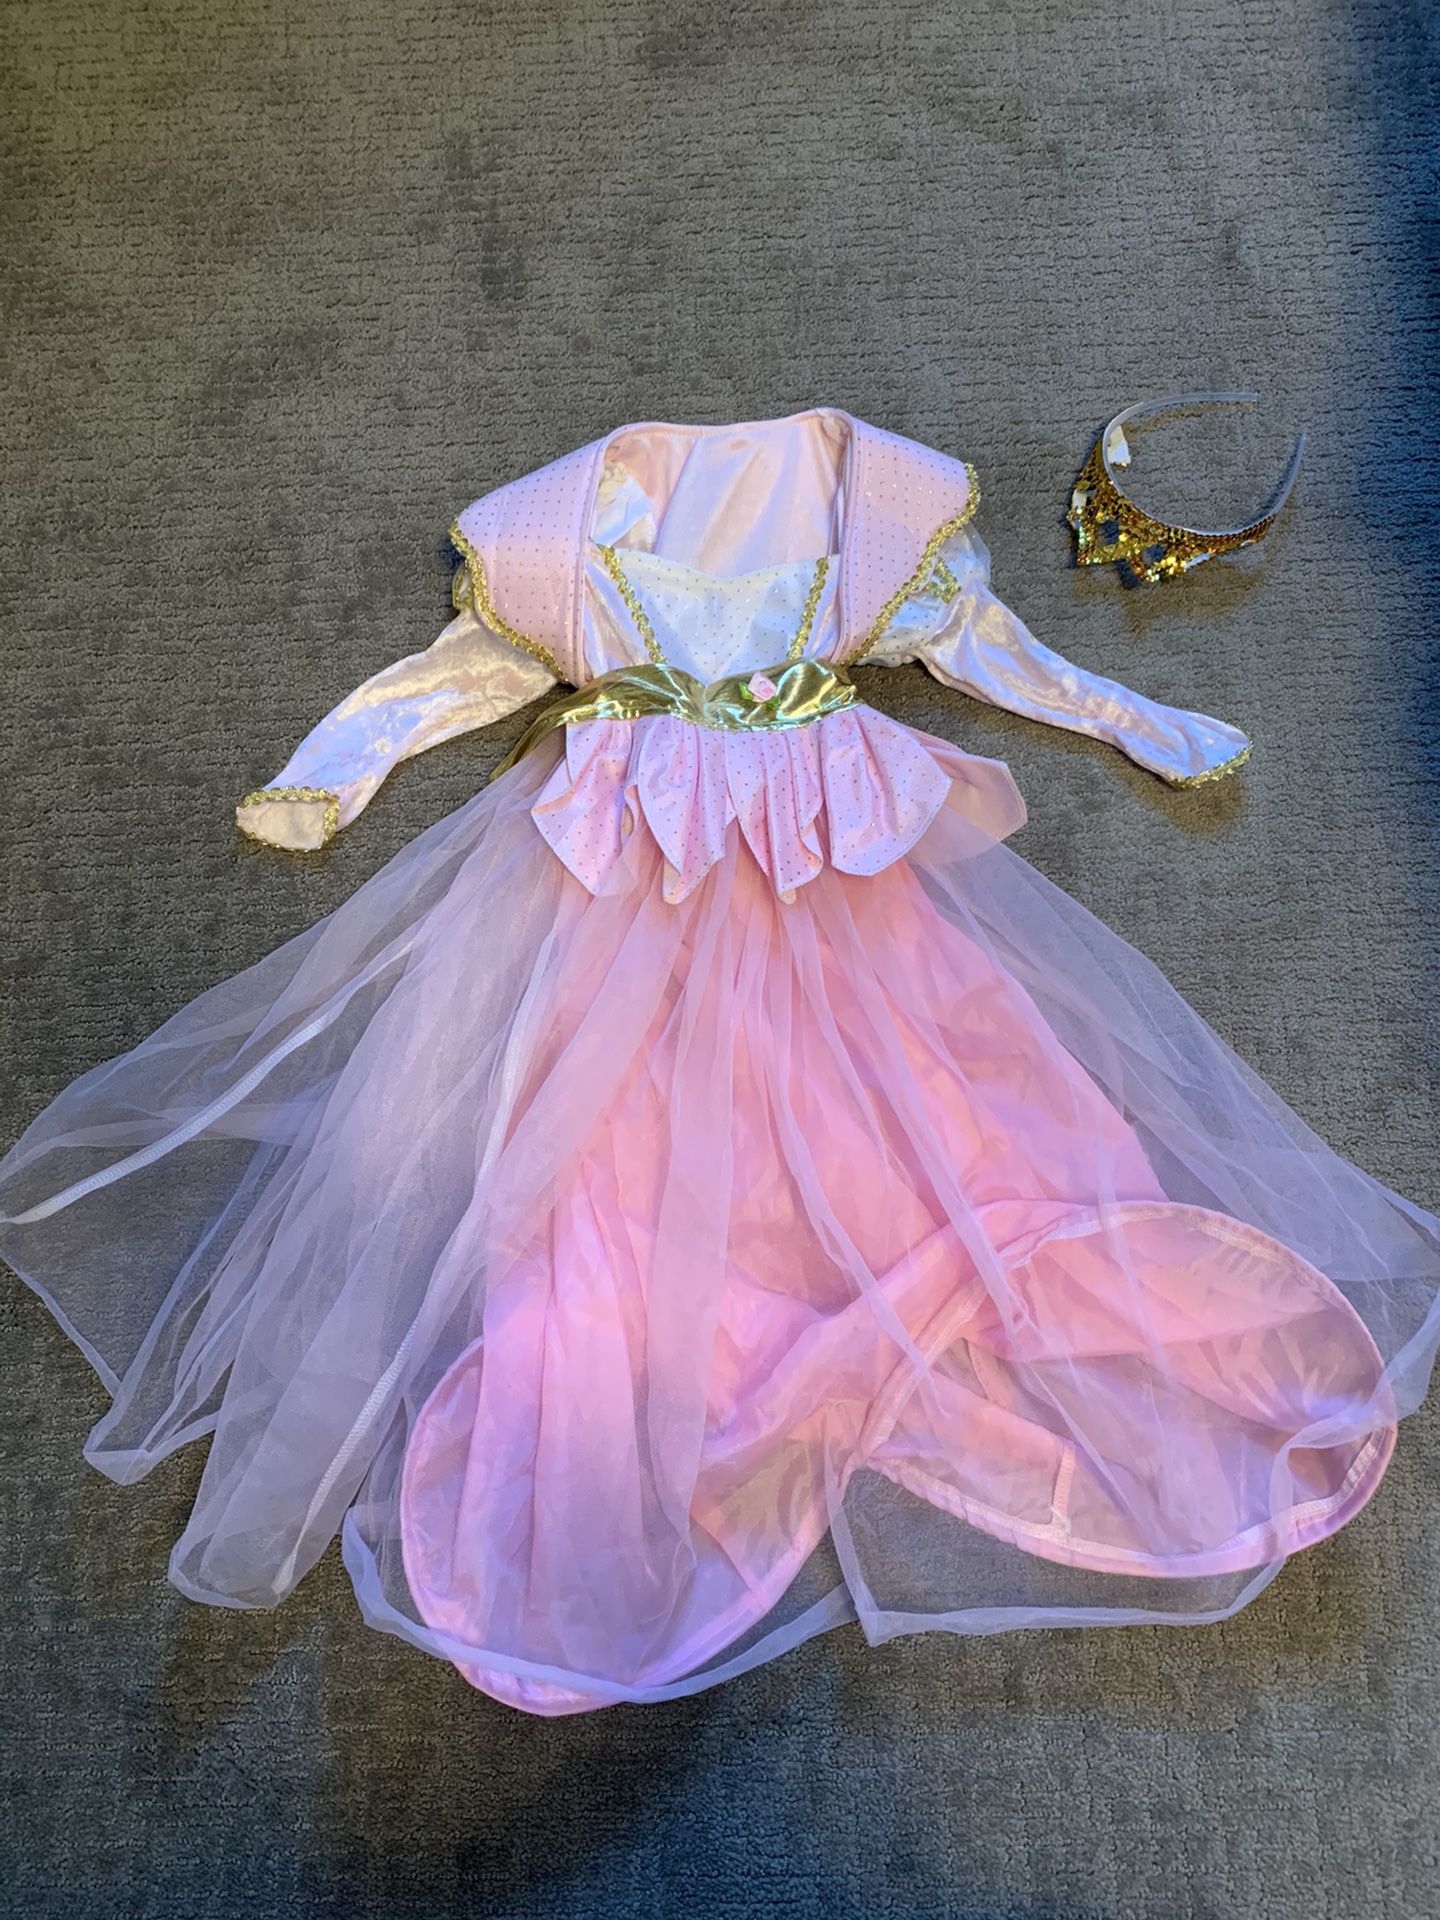 Toddler girl costume